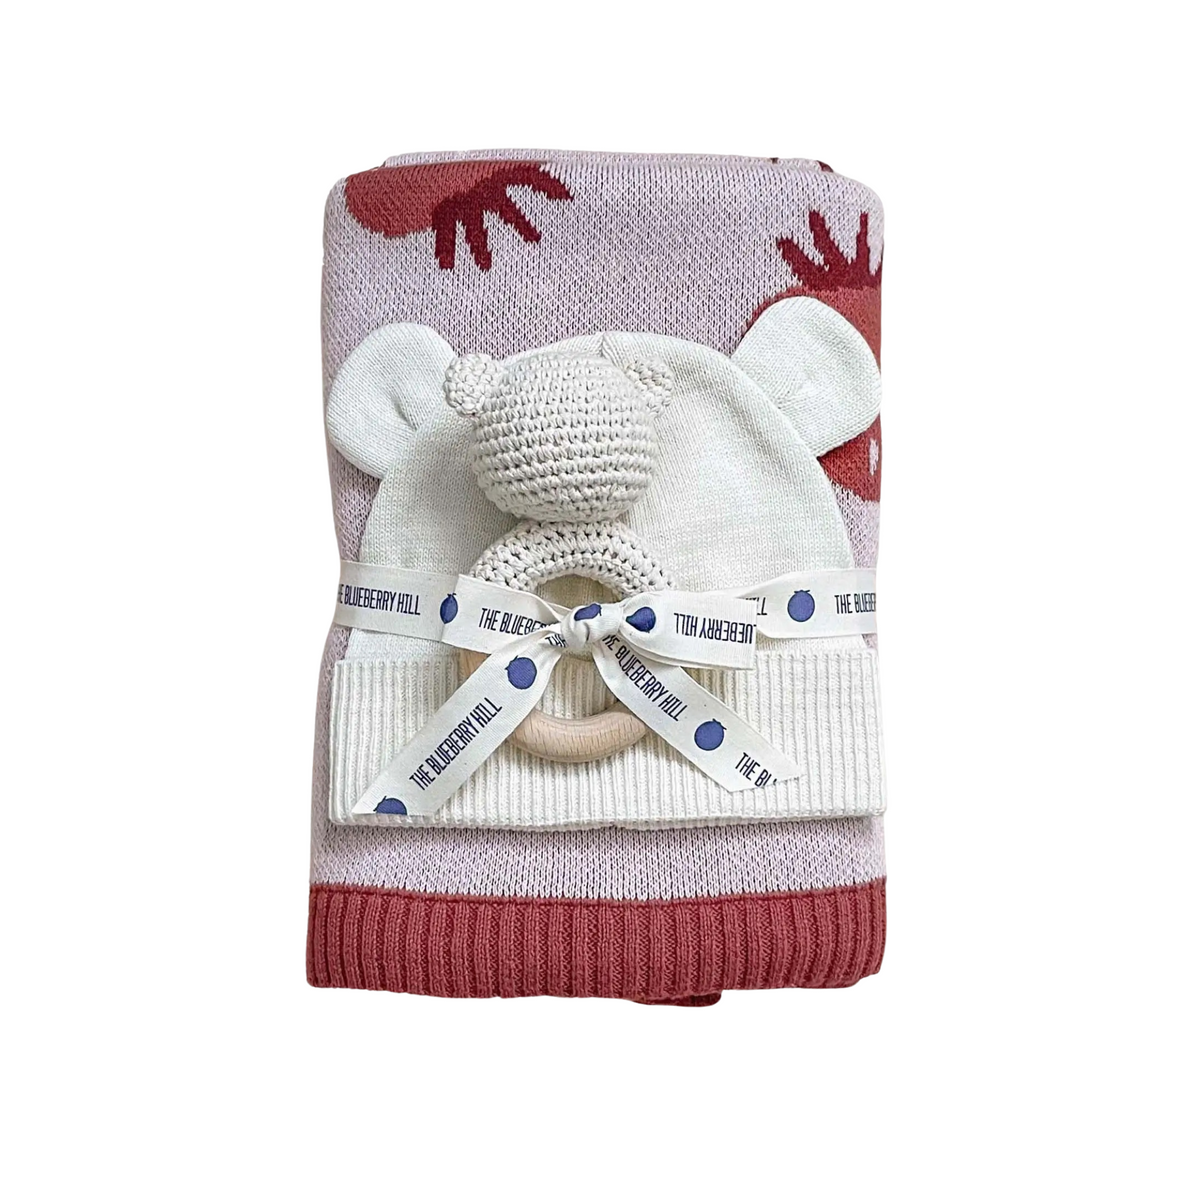 Strawberry Baby Blanket Gift Set